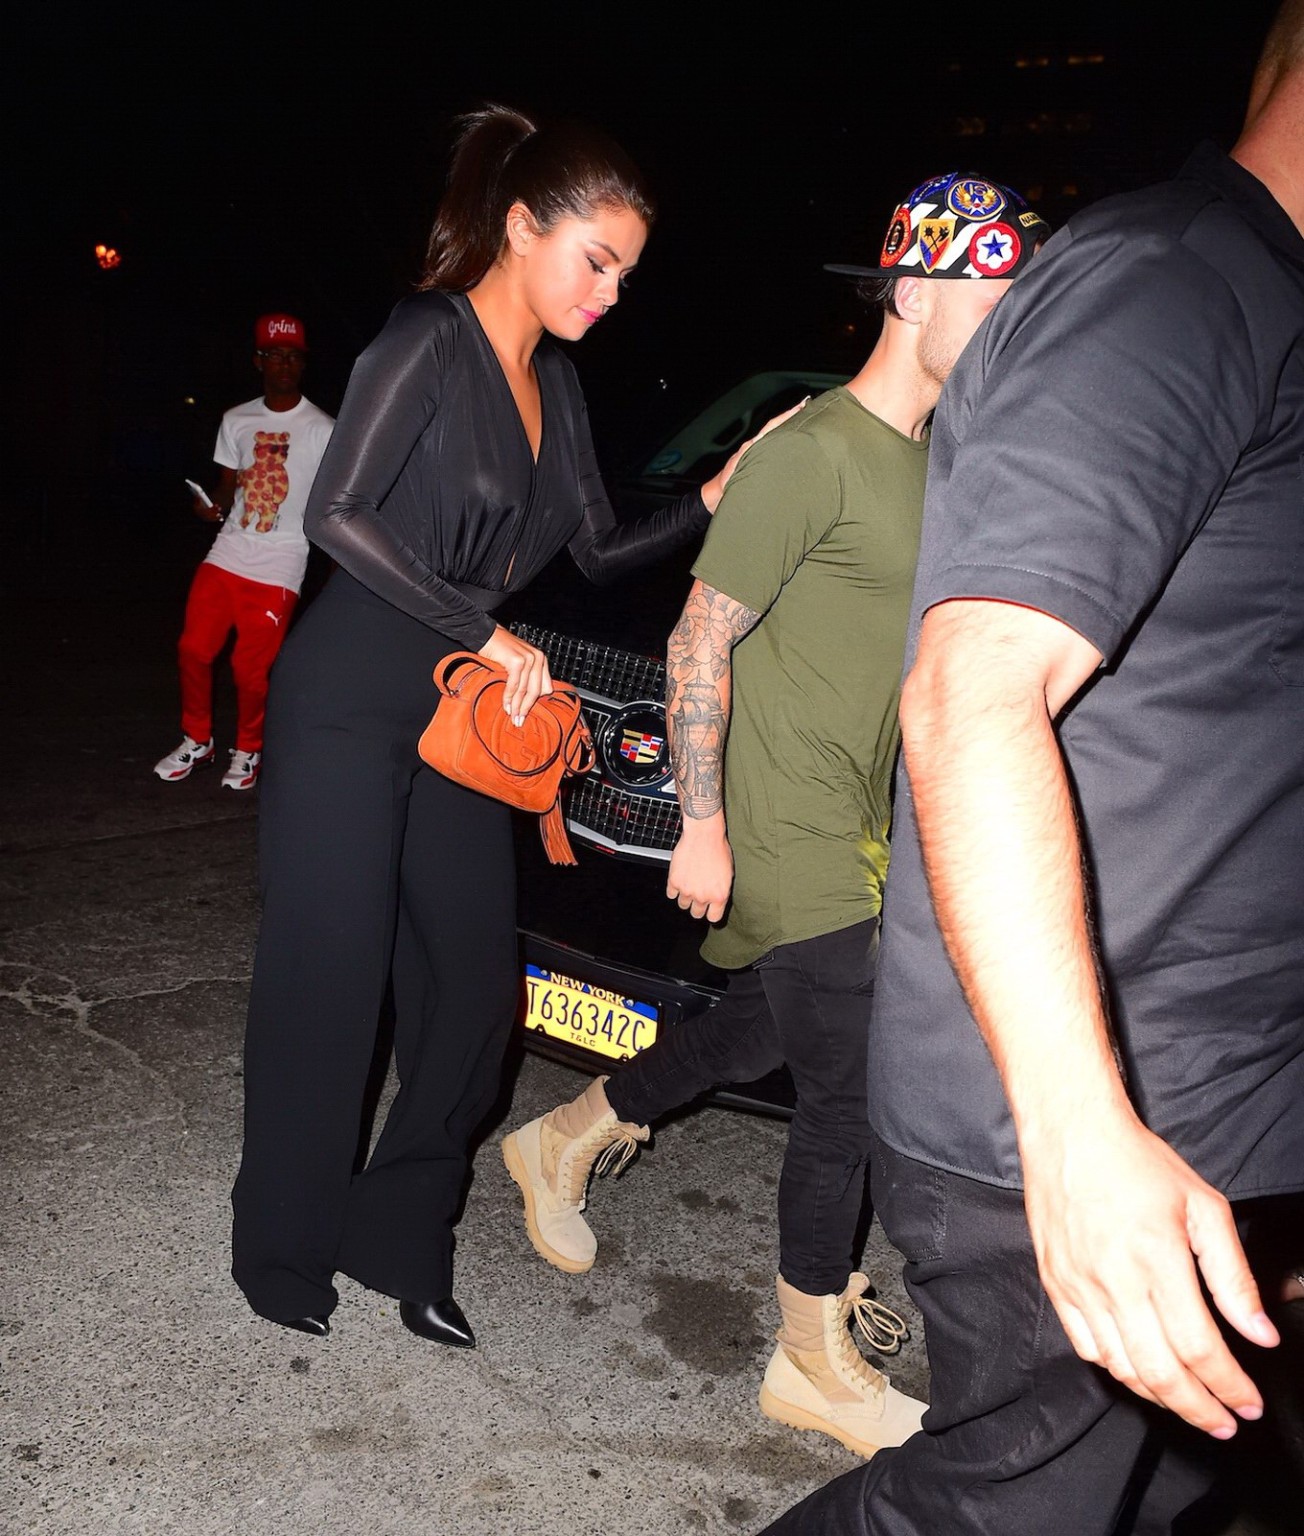 Selena gomez sans soutien-gorge portant une chemise grande ouverte lors d'une sortie nocturne
 #75160601